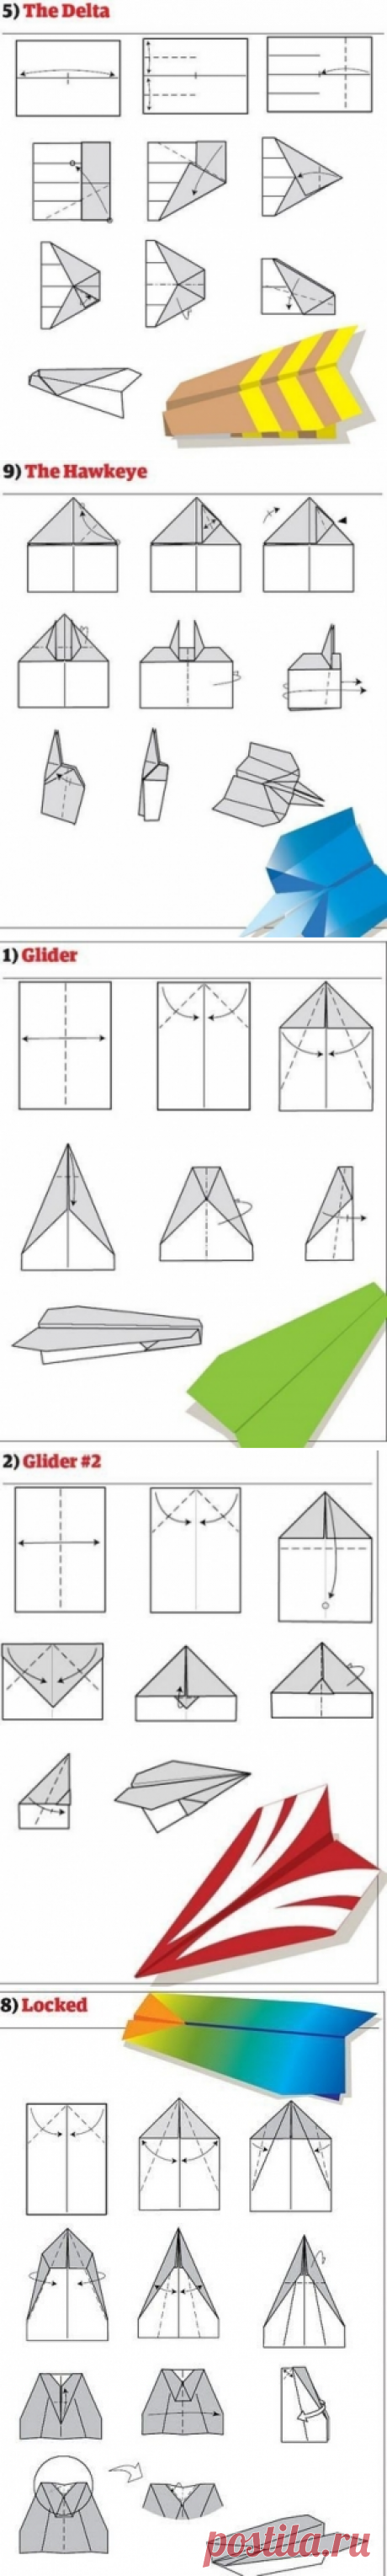 10 способов сделать бумажный самолетик! - Поделки с детьми | Деткиподелки